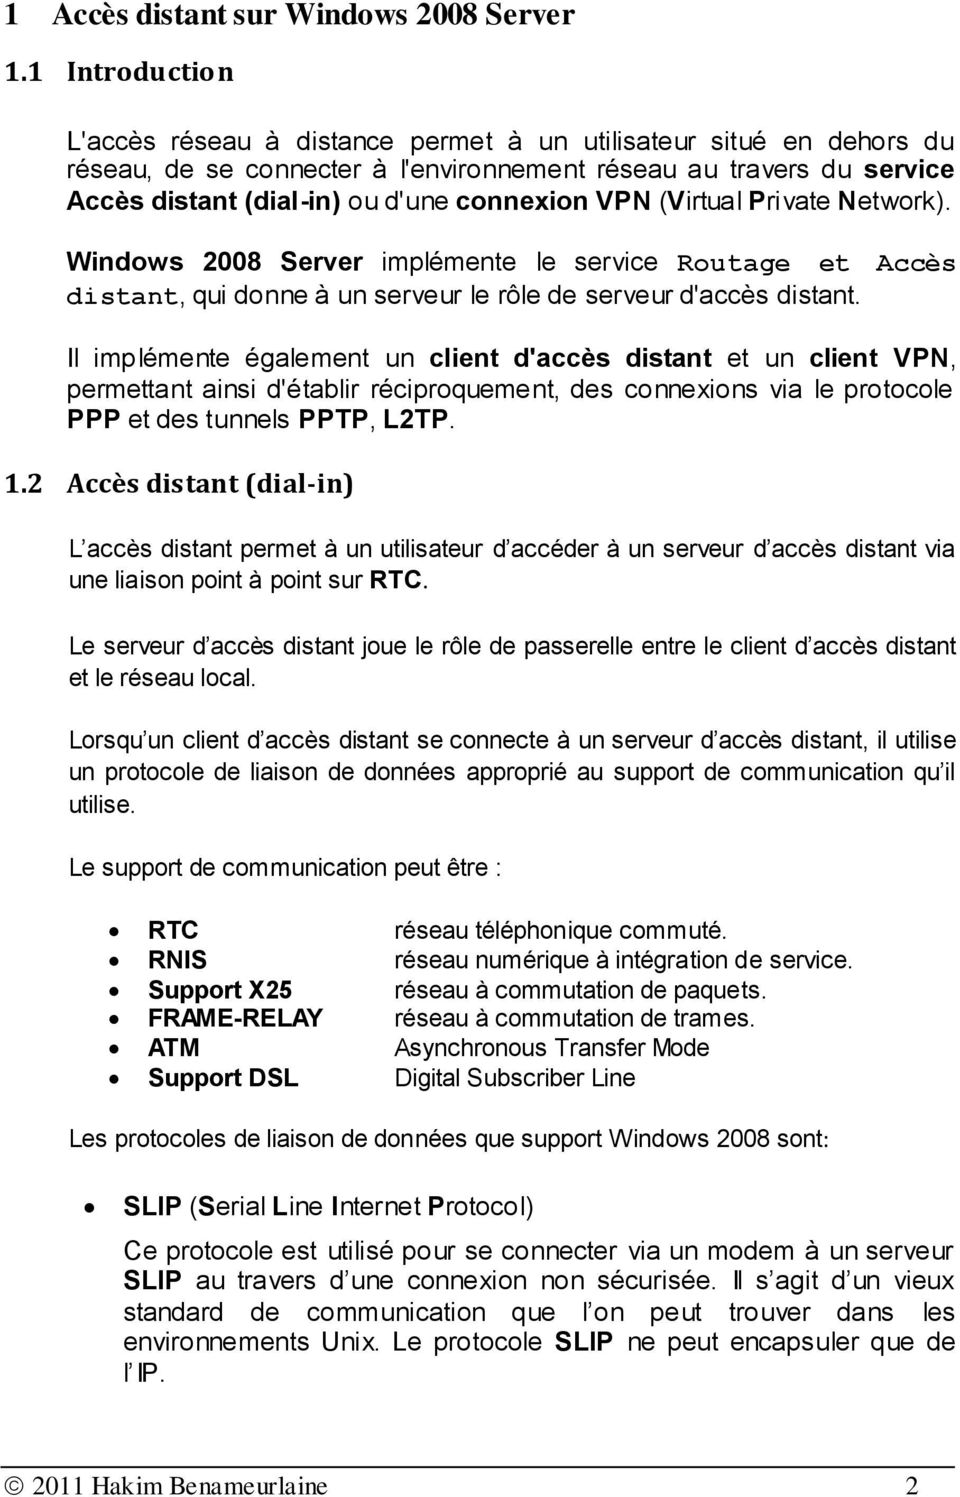 VPN (Virtual Private Network). Windows 2008 Server implémente le service Routage et Accès distant, qui donne à un serveur le rôle de serveur d'accès distant.